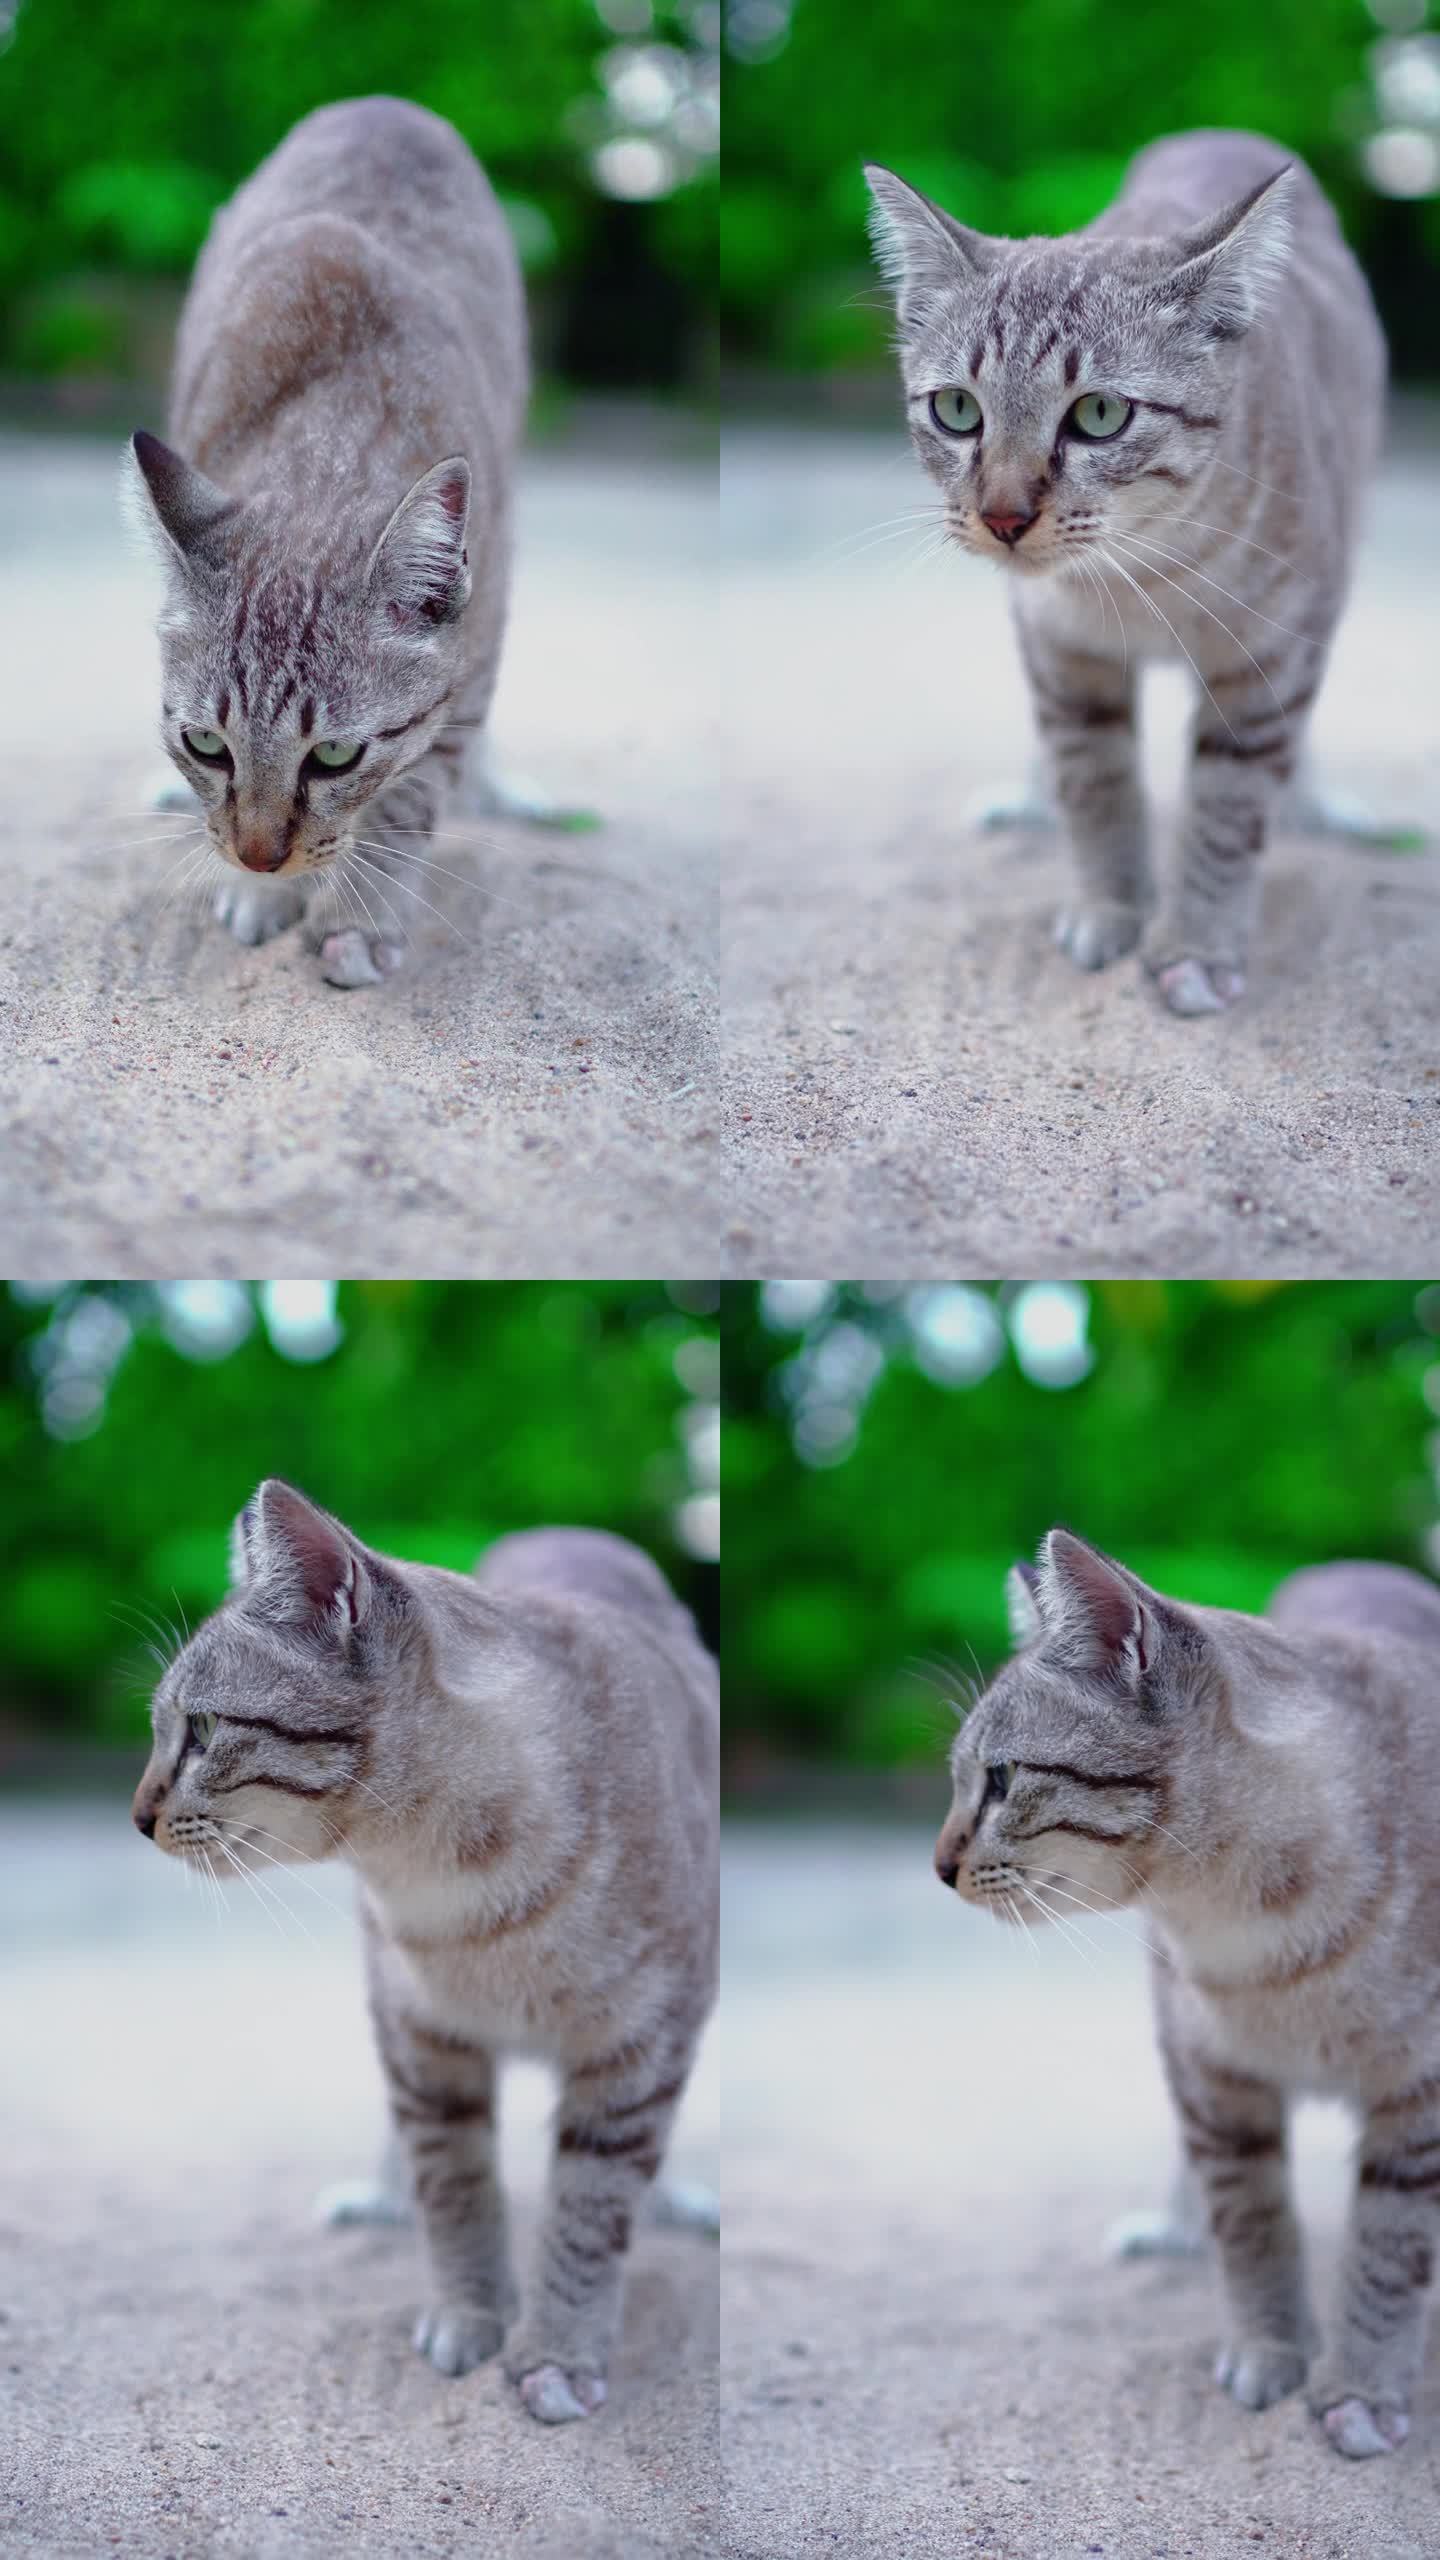 一只猫在沙子里寻找和挖掘尿尿或拉屎。